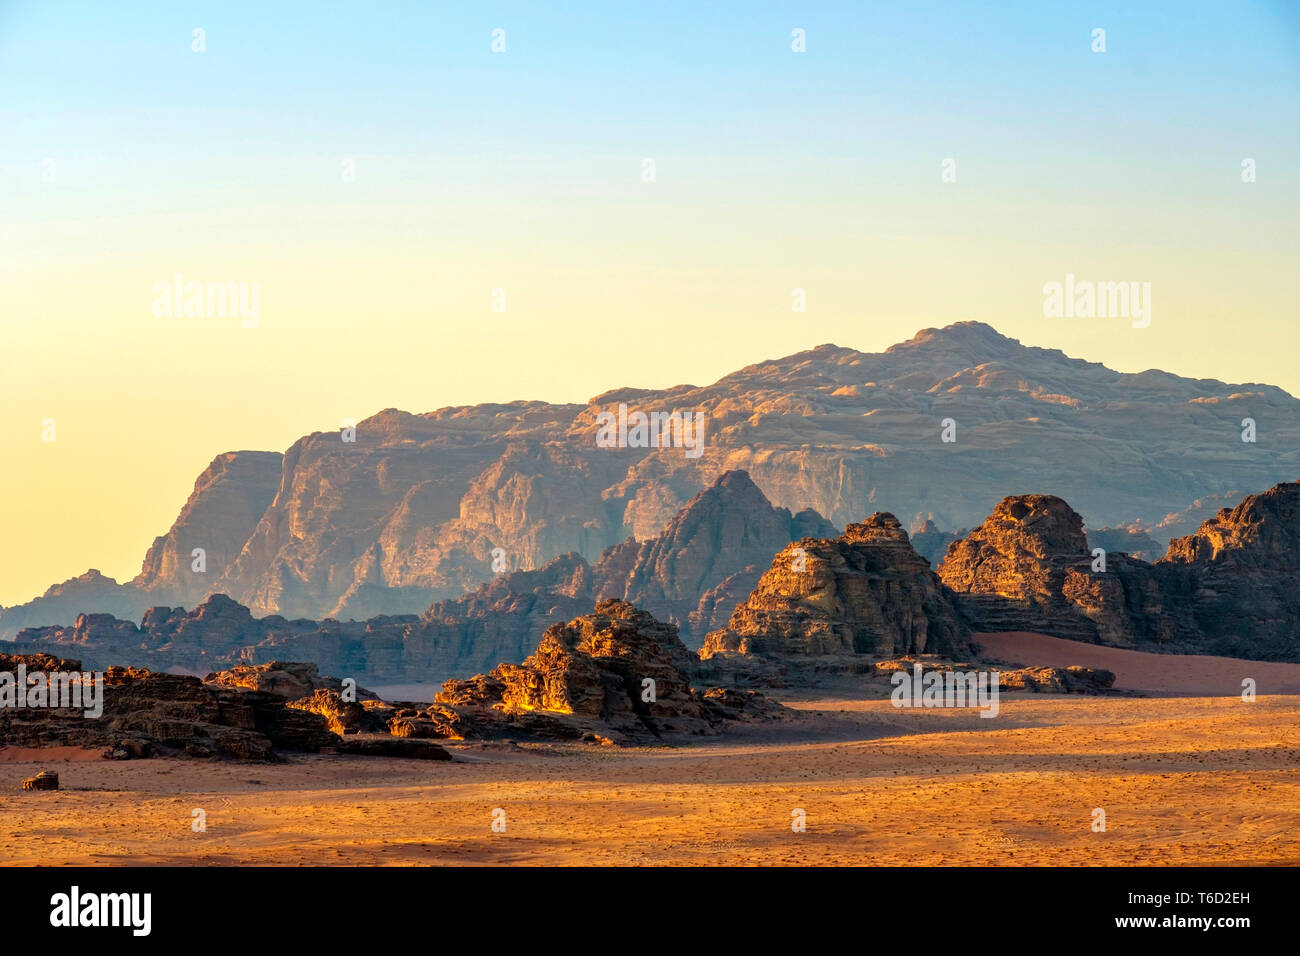 Jordanien, Aqaba Governorate, Wadi Rum. Wadi Rum geschützter Bereich, UNESCO-Weltkulturerbe. Landschaft der Wüste bei Sonnenuntergang. Stockfoto